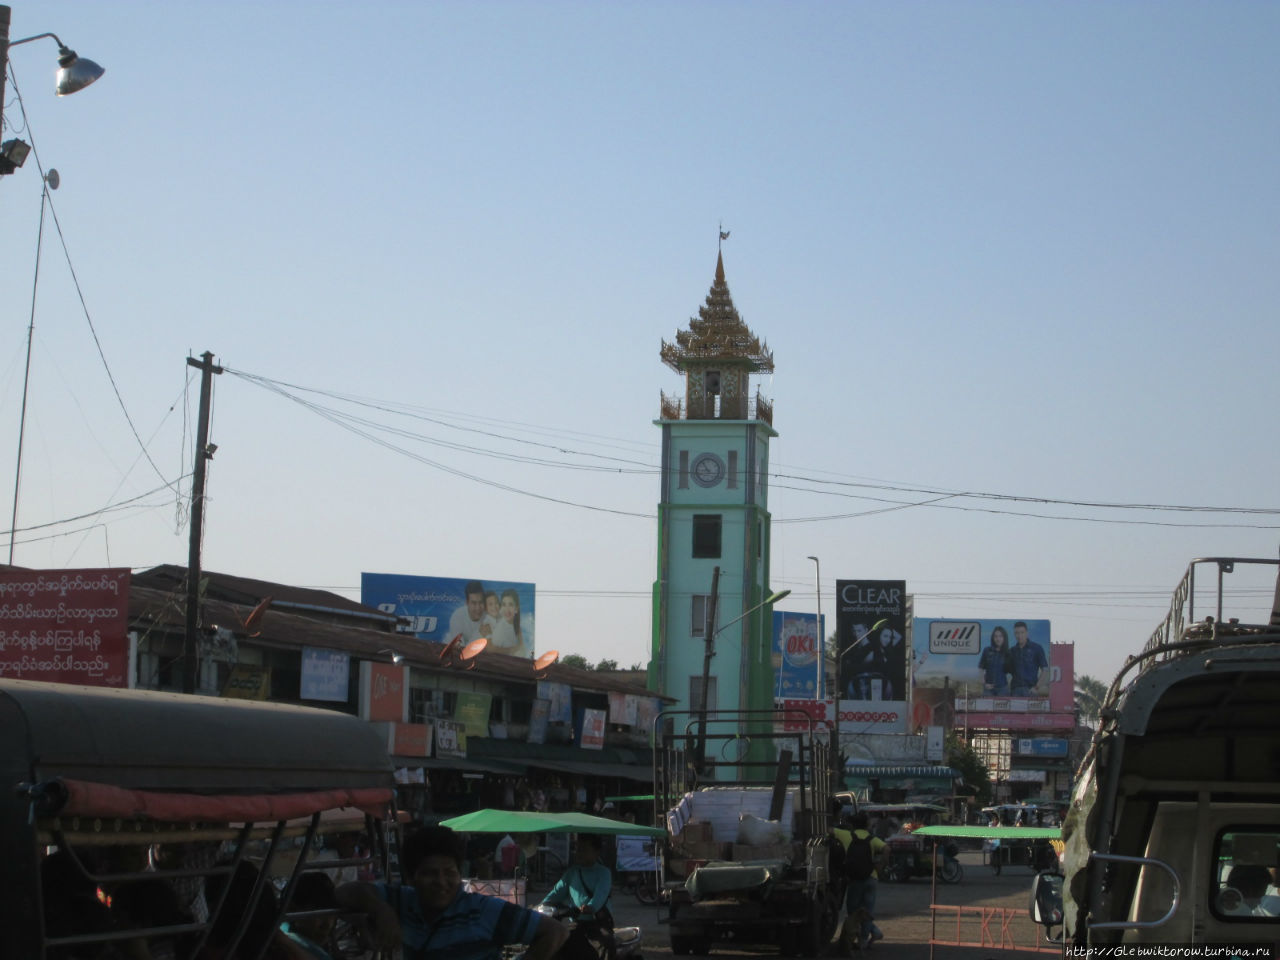 Центр Татоуна и поездка в Паан Татон, Мьянма